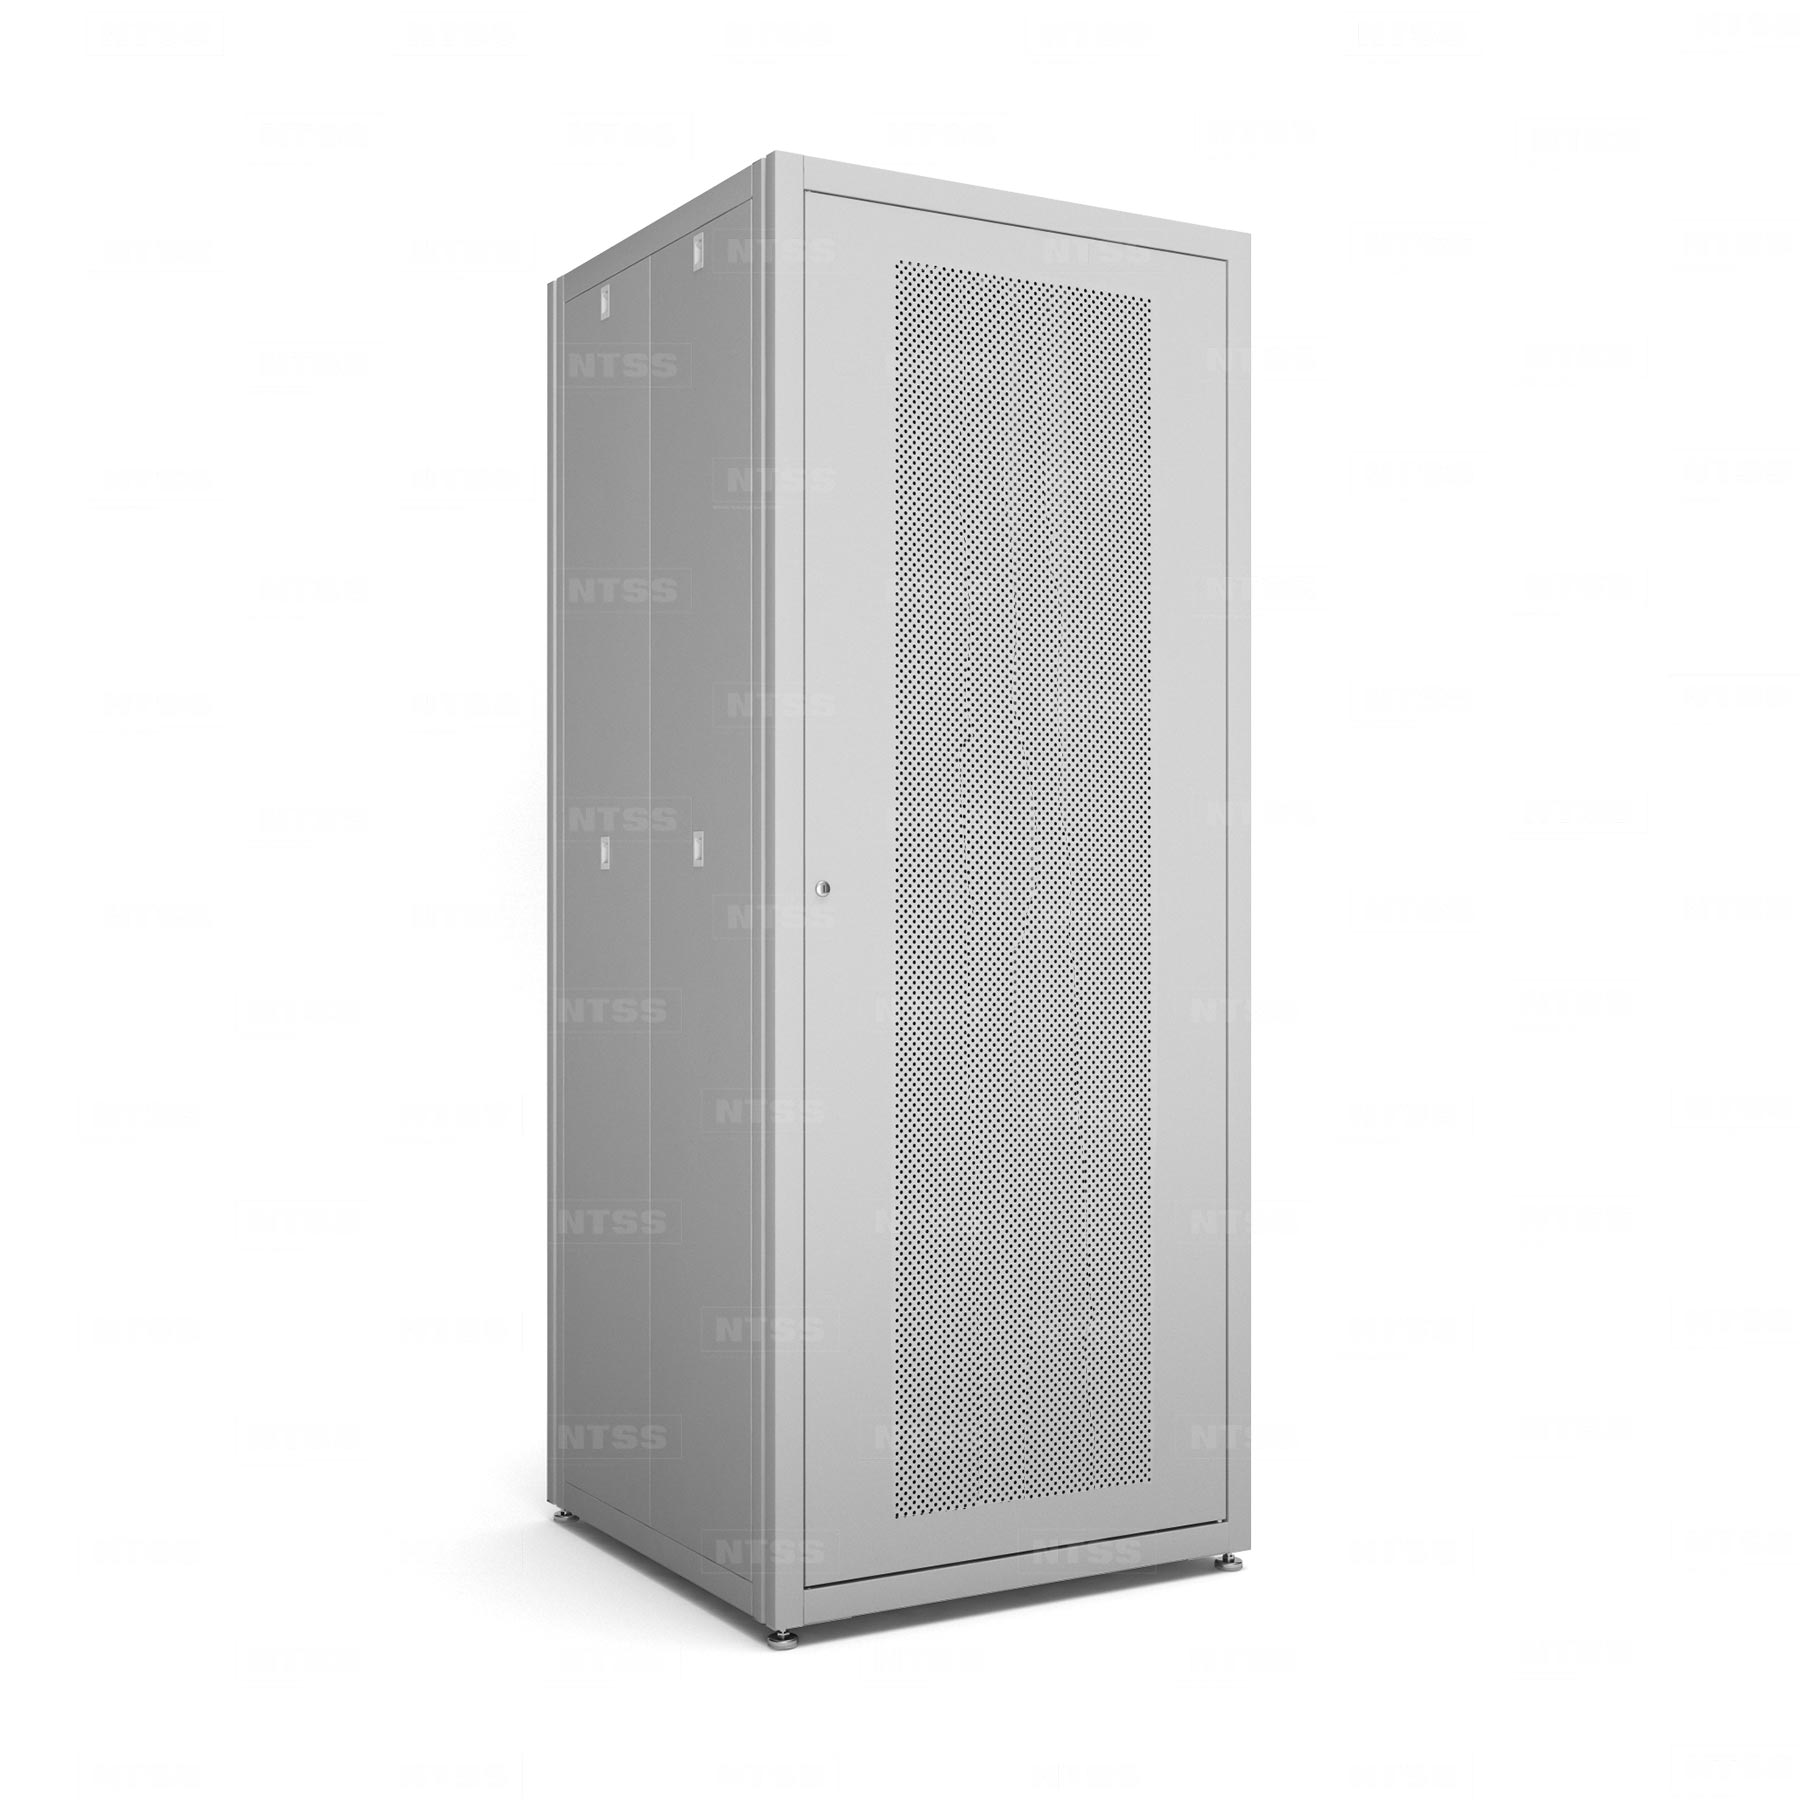 19" напольный шкаф "СТАНДАРТ" 47U 800x1000 мм, передняя дверь перфорация, боковые стенки съемные 